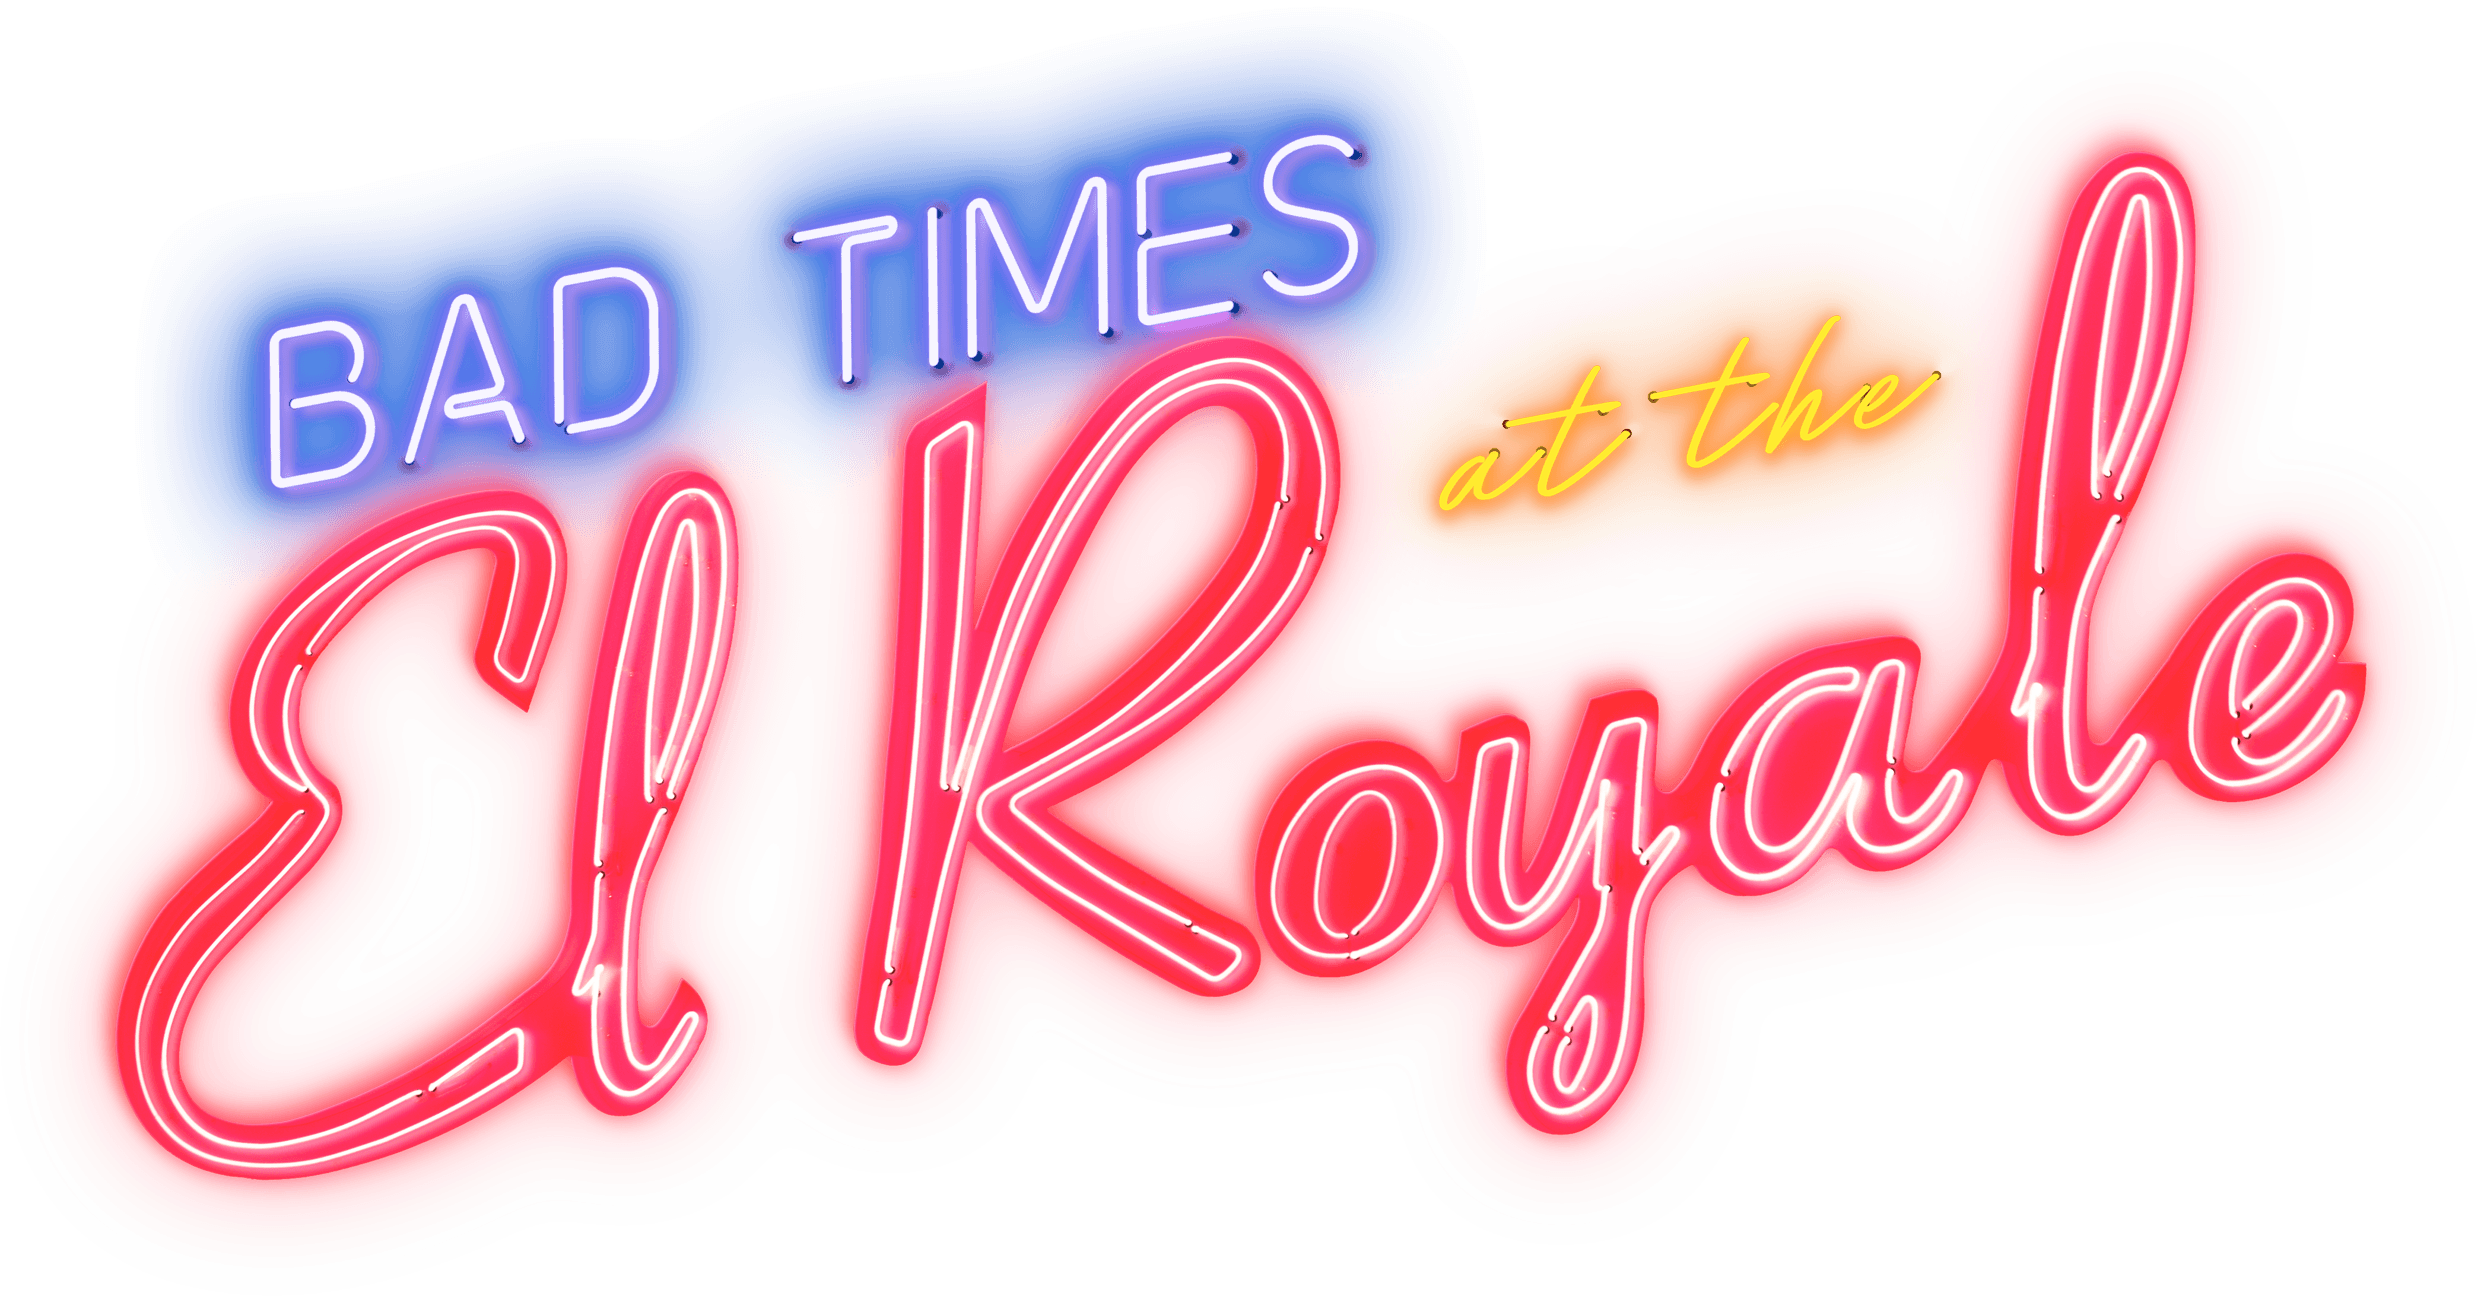 Bad Times at the El Royale logo